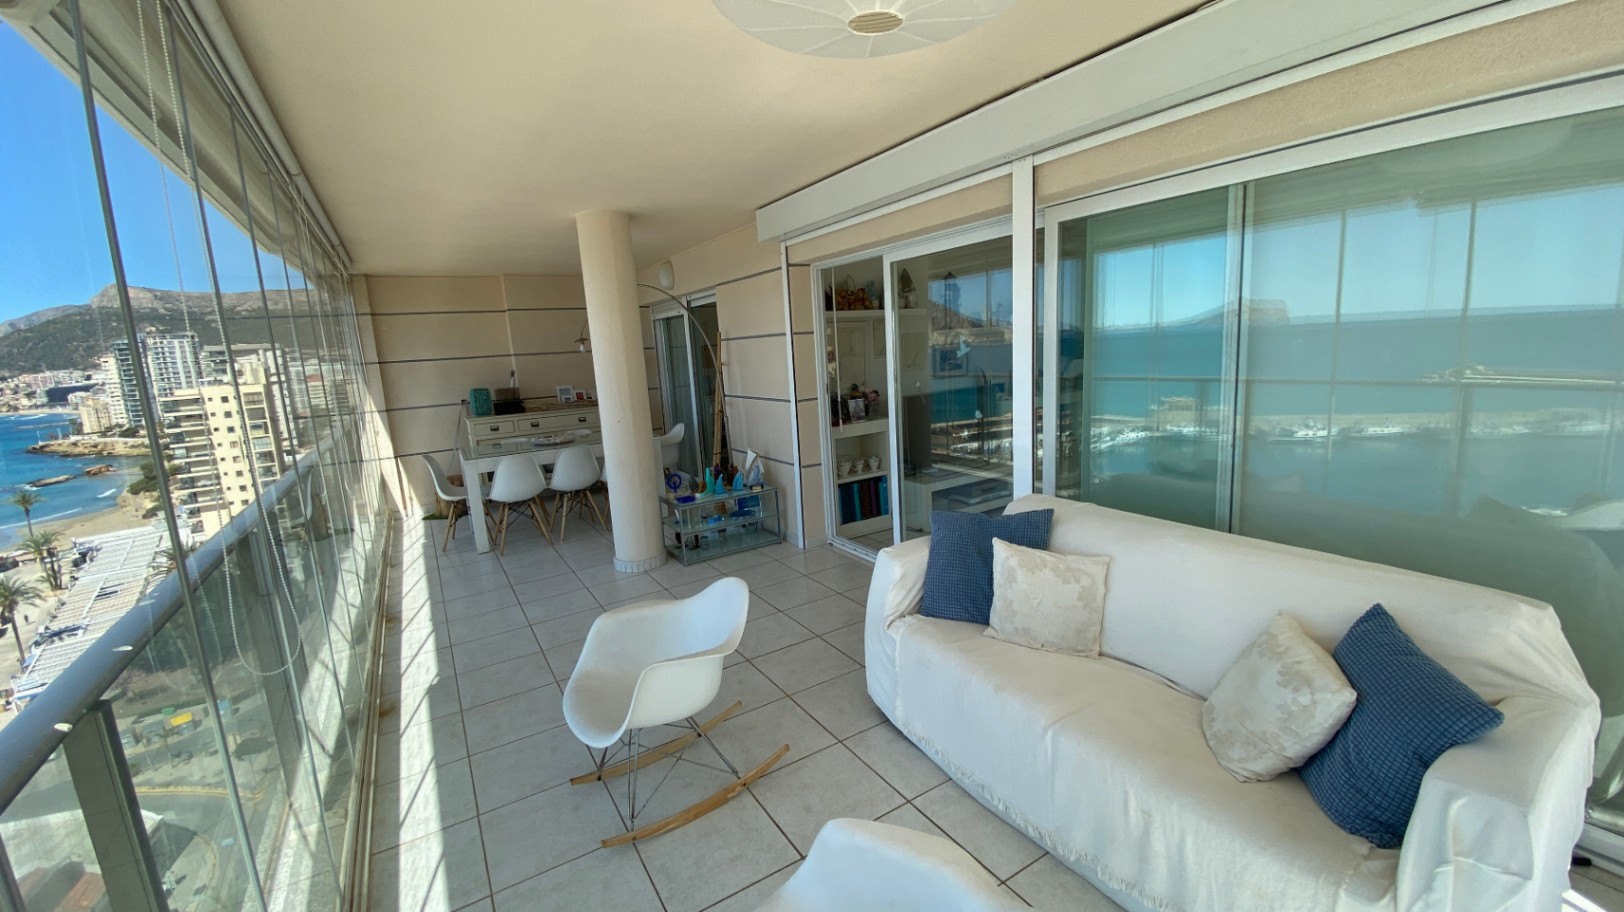 Alquiler anual! Amplio y acogedor apartamento con vistas panorámicas al mar en el puerto de Calpe.